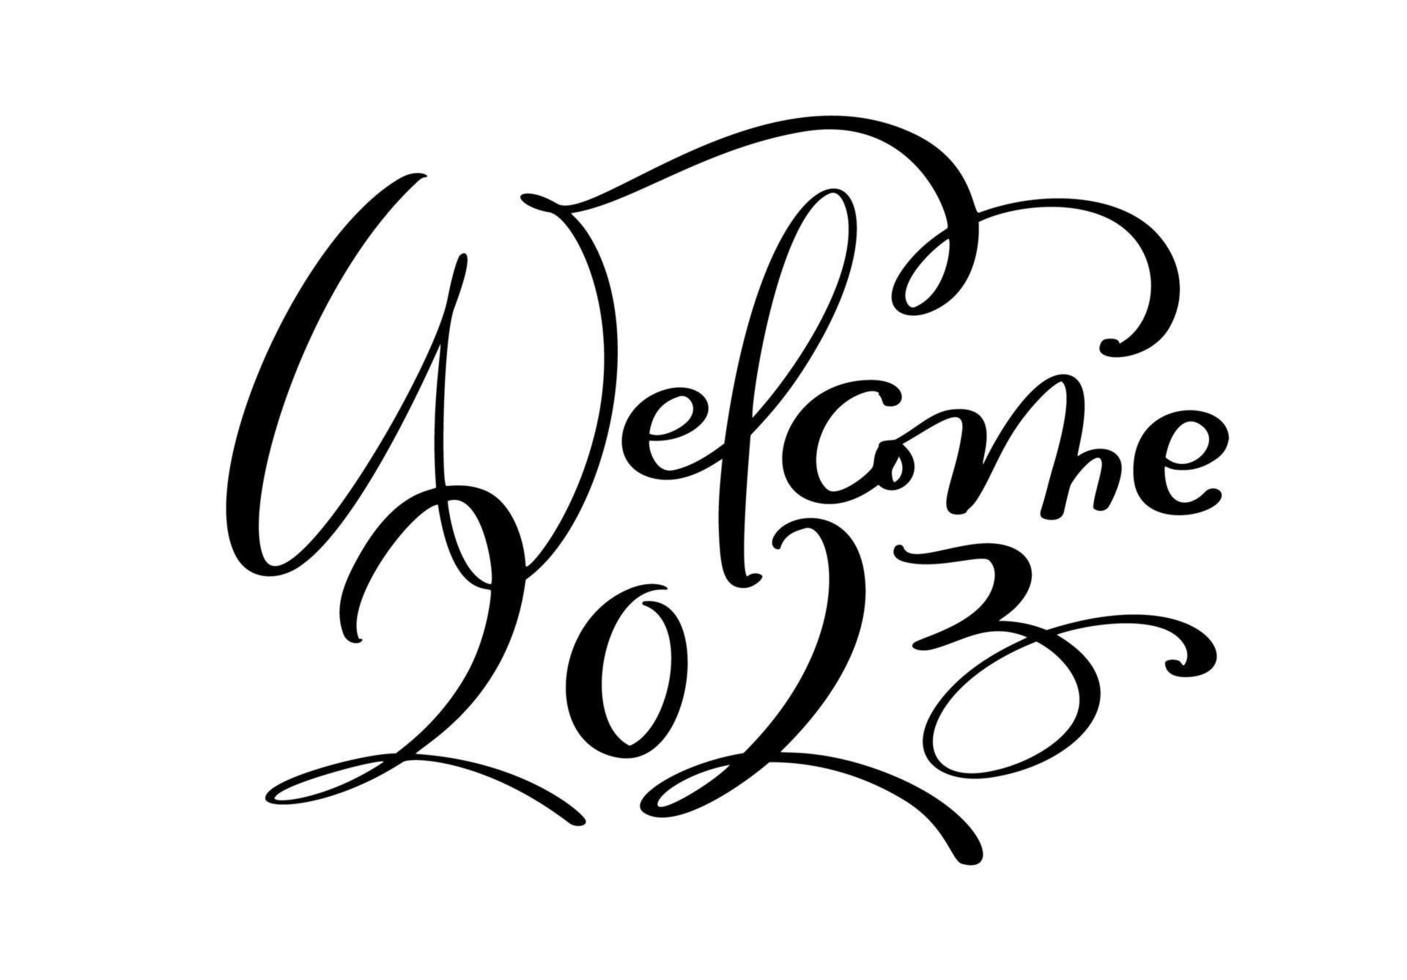 Willkommen 2023 Vektor handgezeichneter Kalligrafie-Schriftzug. frohes neues jahr und frohe weihnachten grußkarte und logoillustration. vorlage für postkarte, druck, webbanner, poster